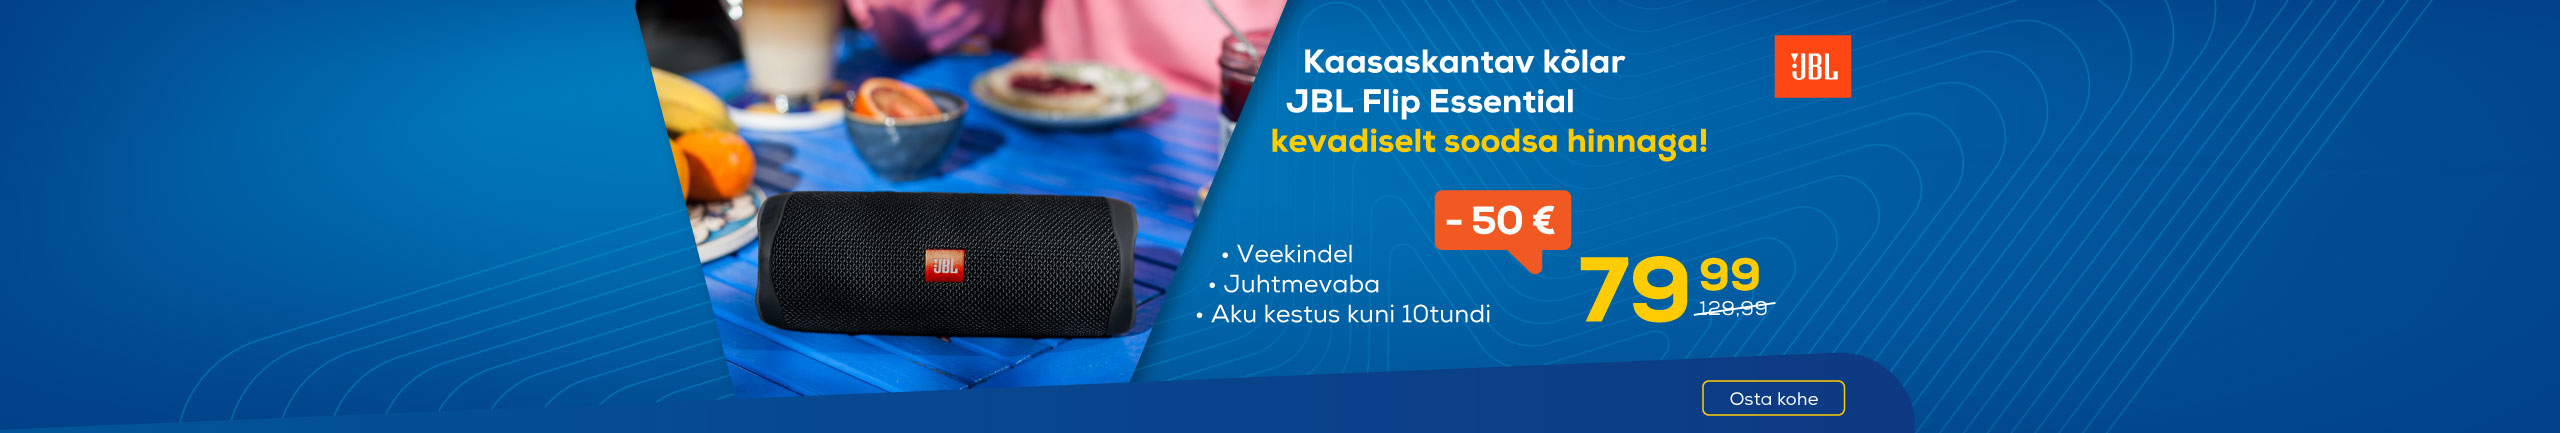 Portable speaker JBL Flip Essential sale!